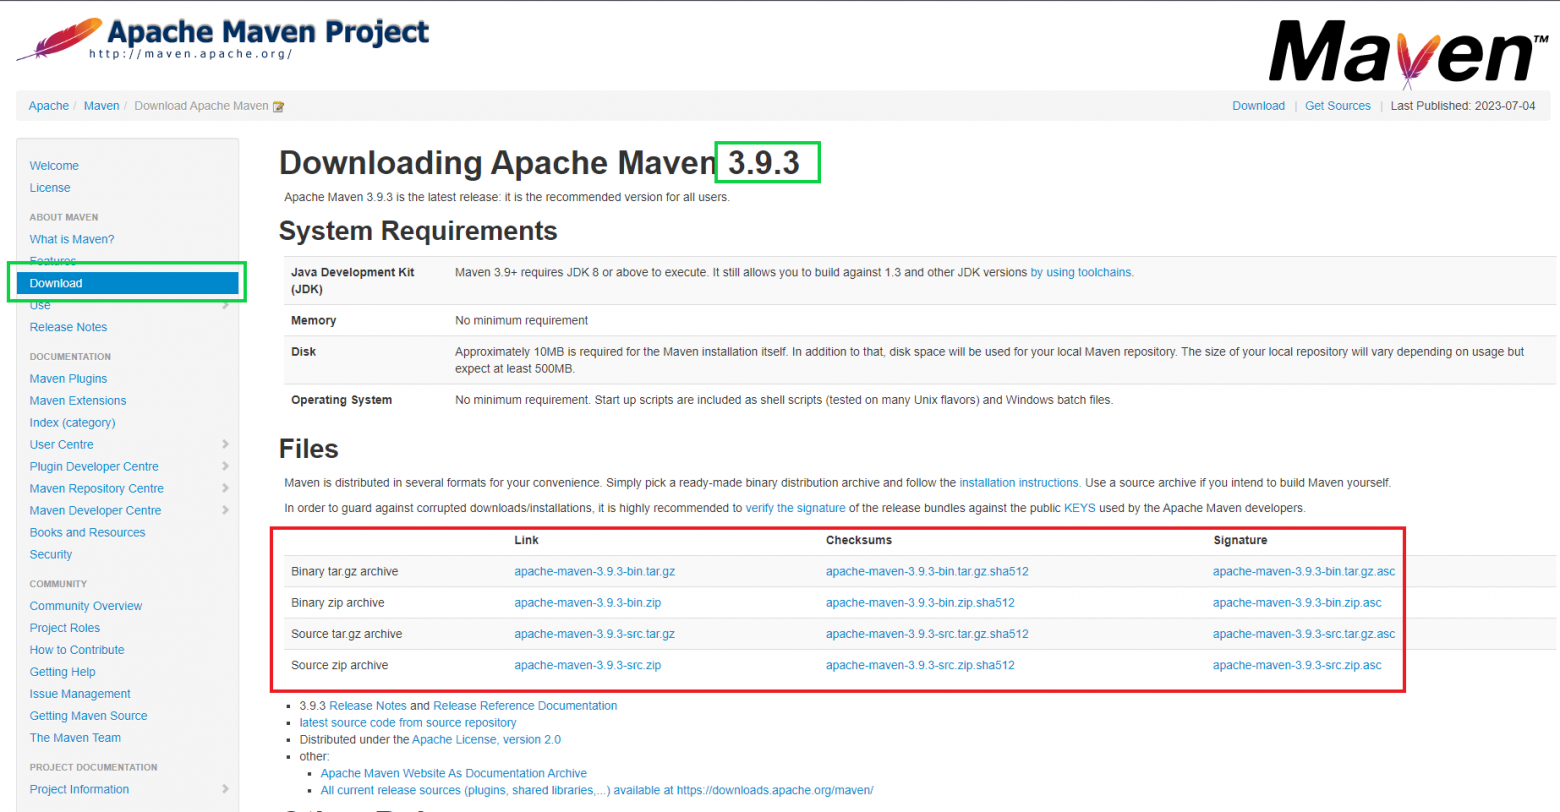 Apache Maven 3.9.3